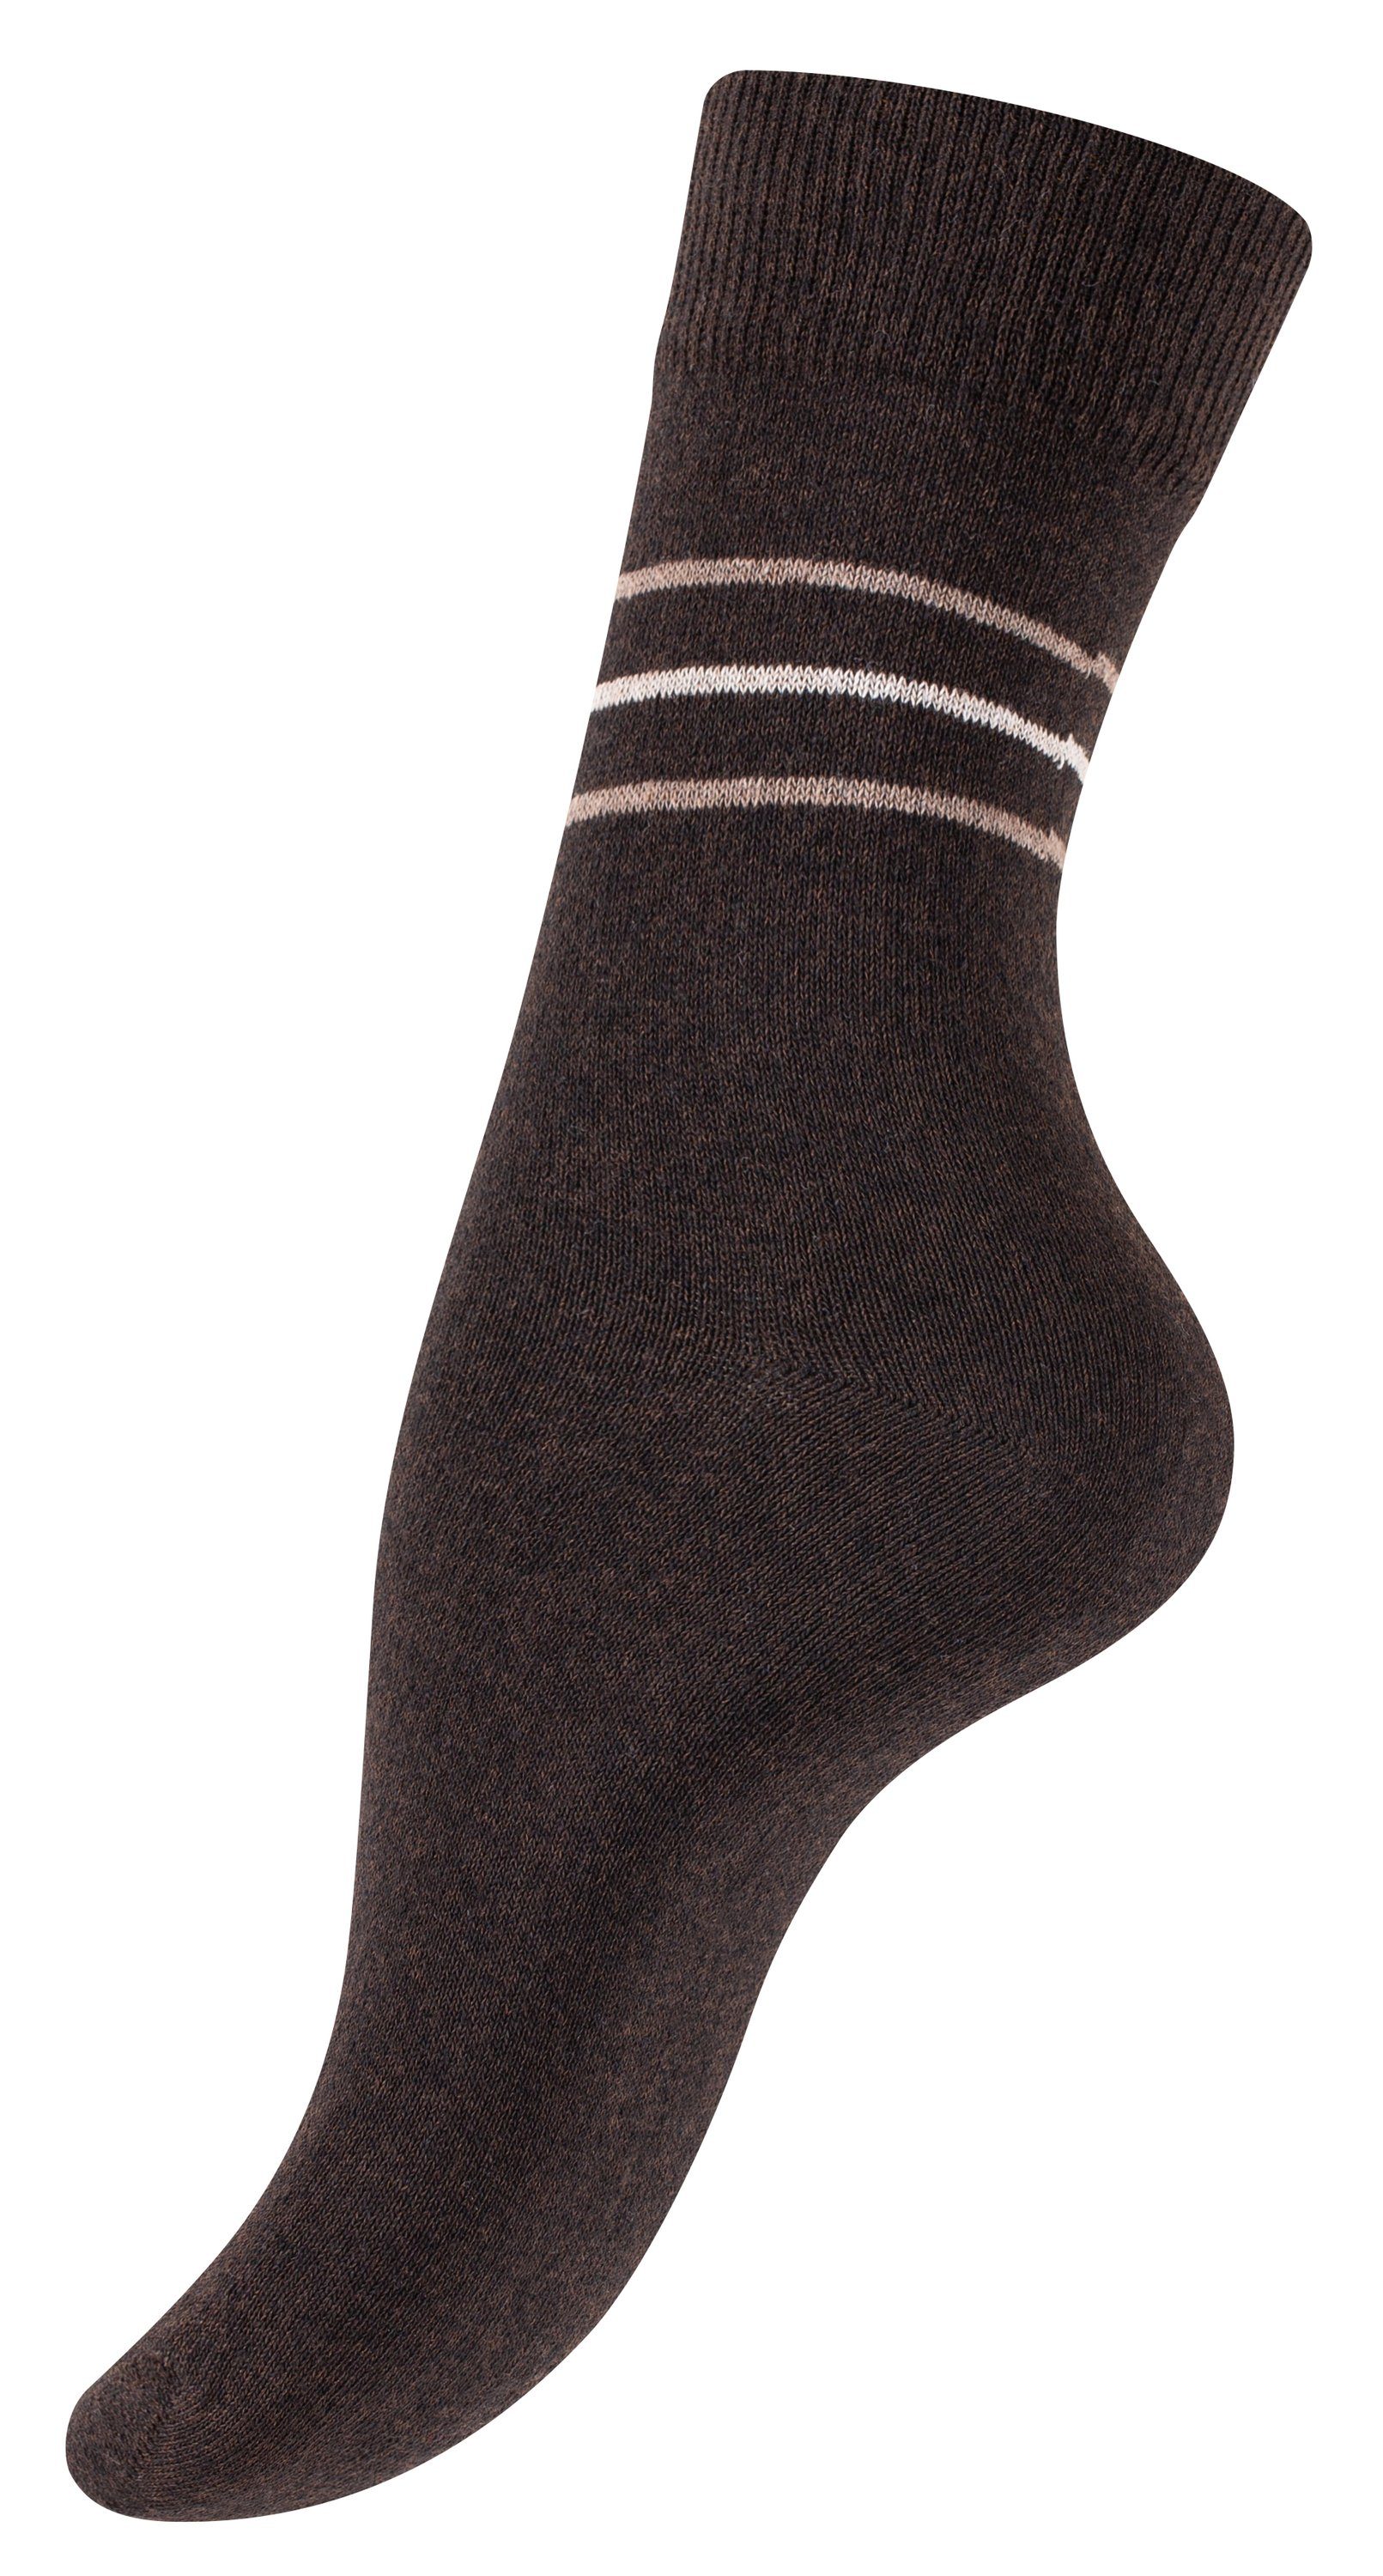 Vincent Creation® Socken (10-Paar) braun/beige in Baumwollqualität angenehmer